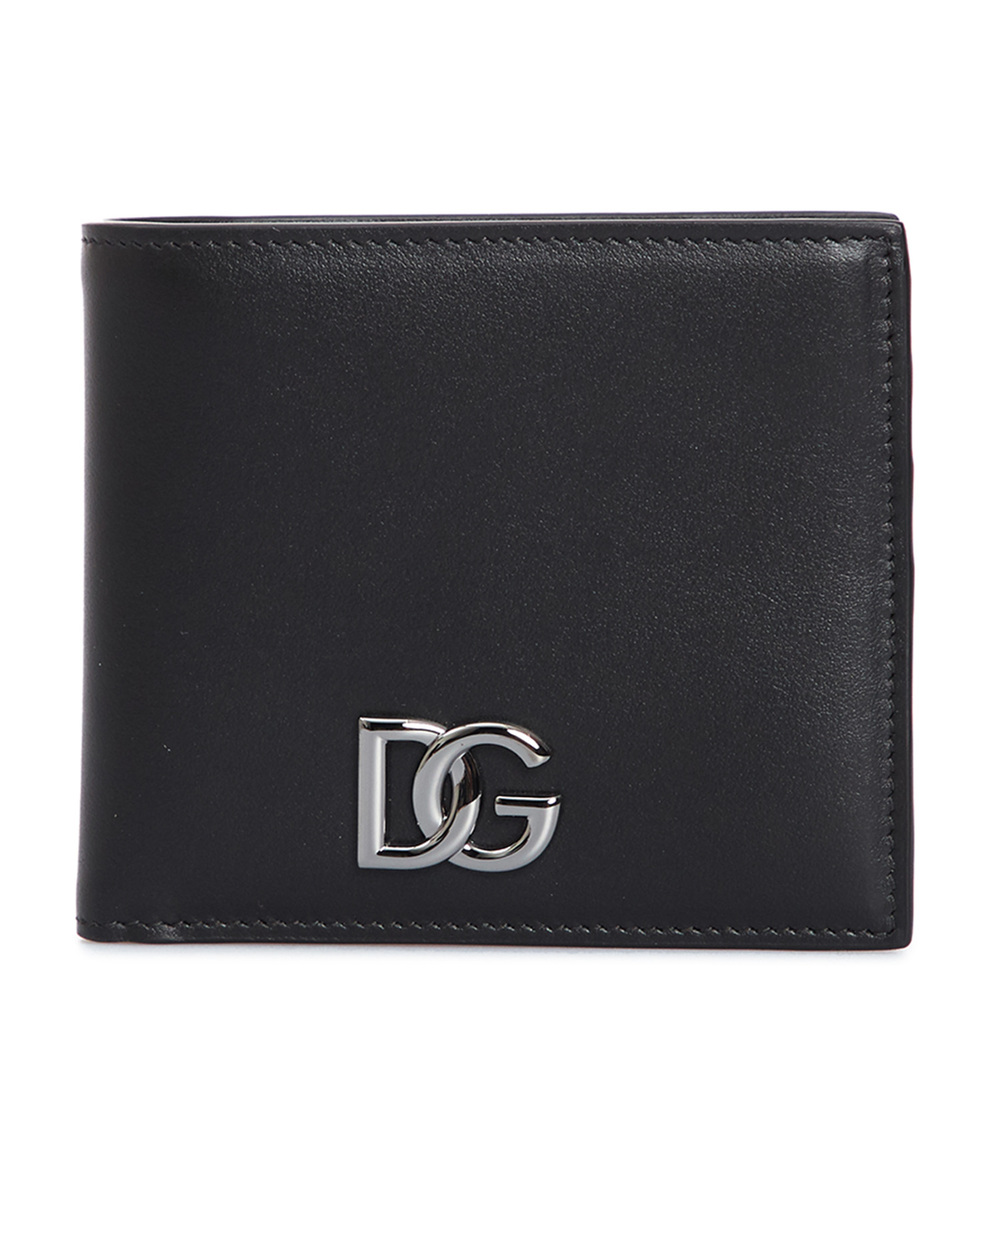 Кожаный кошелек Dolce&Gabbana BP1321-AW576, черный цвет • Купить в интернет-магазине Kameron